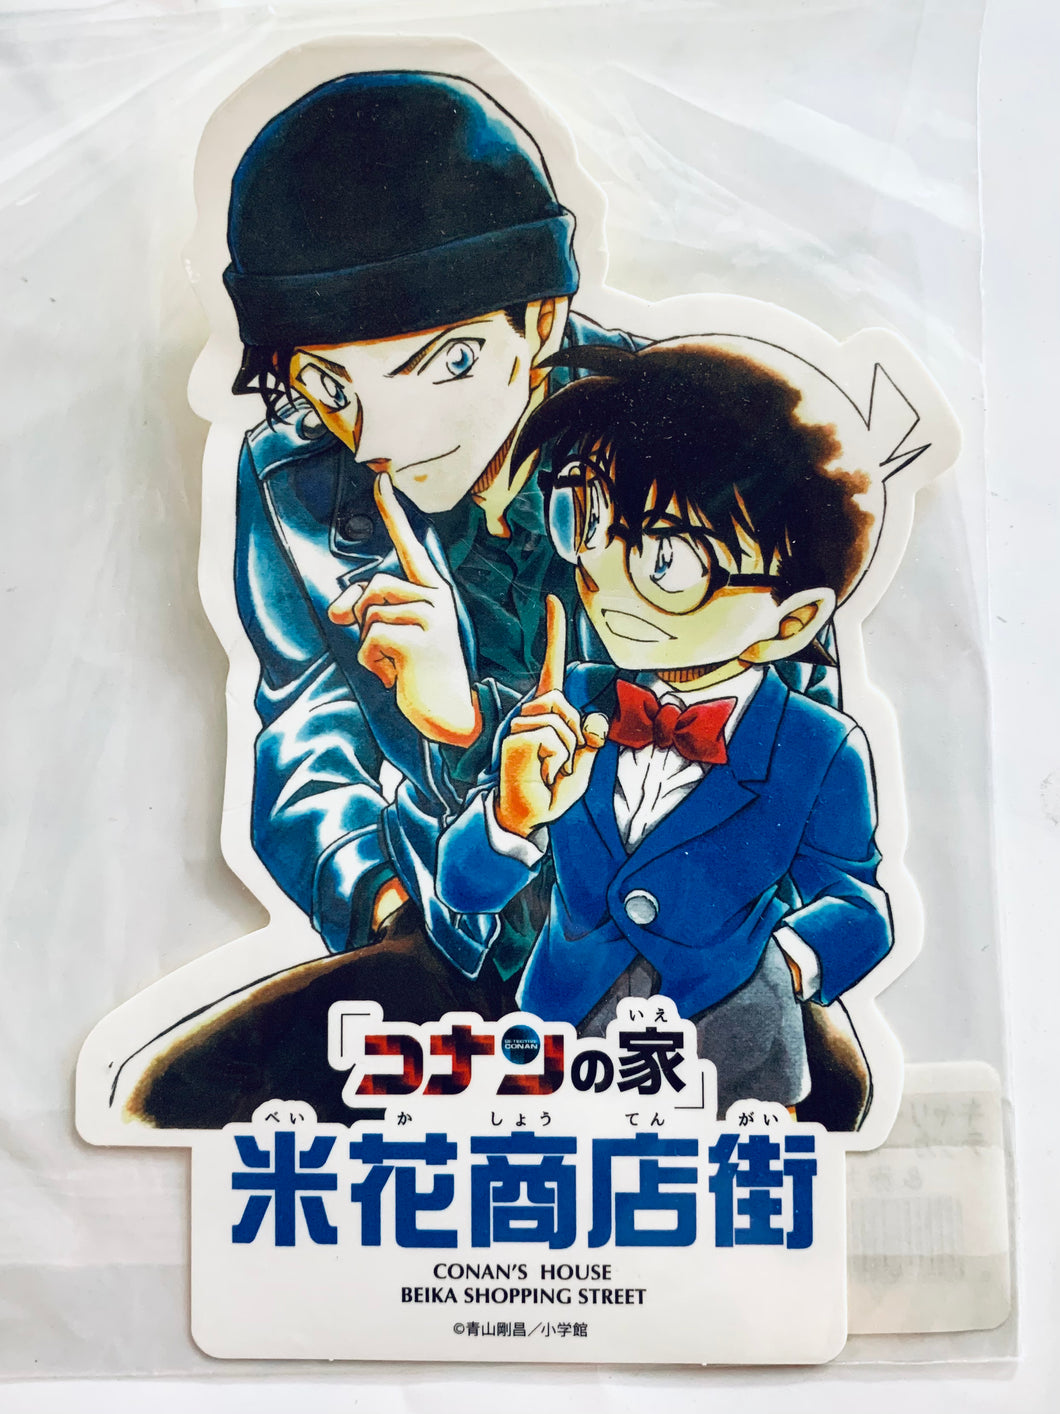 Detective Conan - Conan & Akai - Carry Bag Sticker A - Tottori Conan Department Store Limited